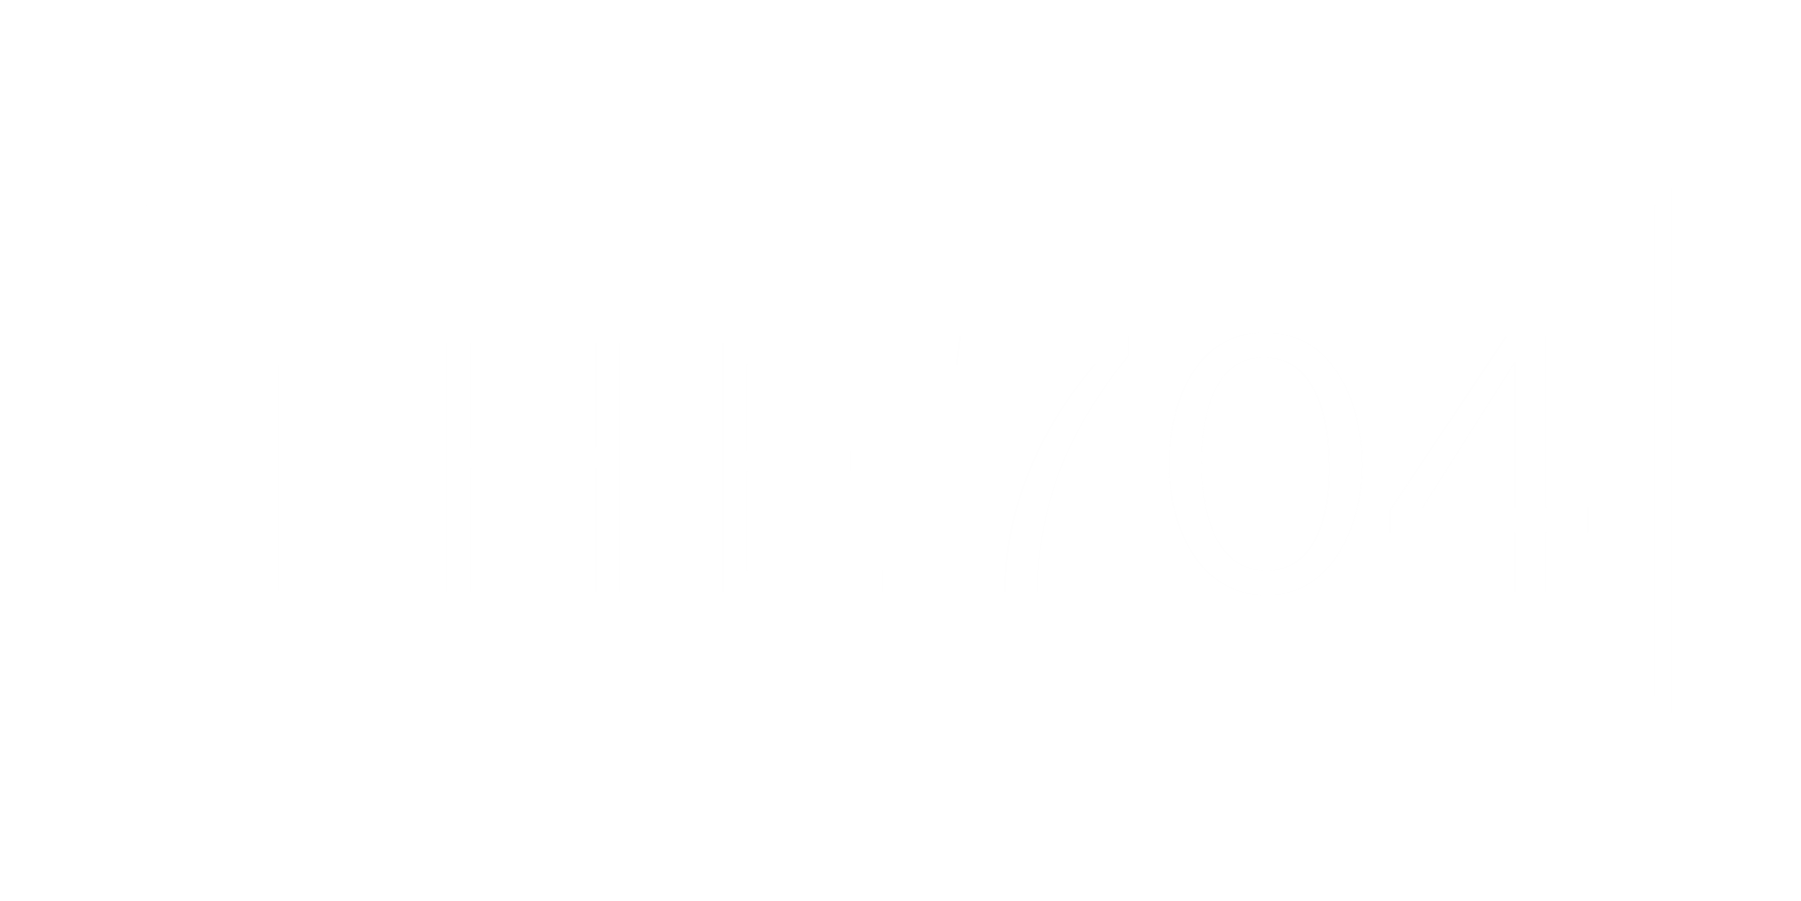 The 704 white logo.